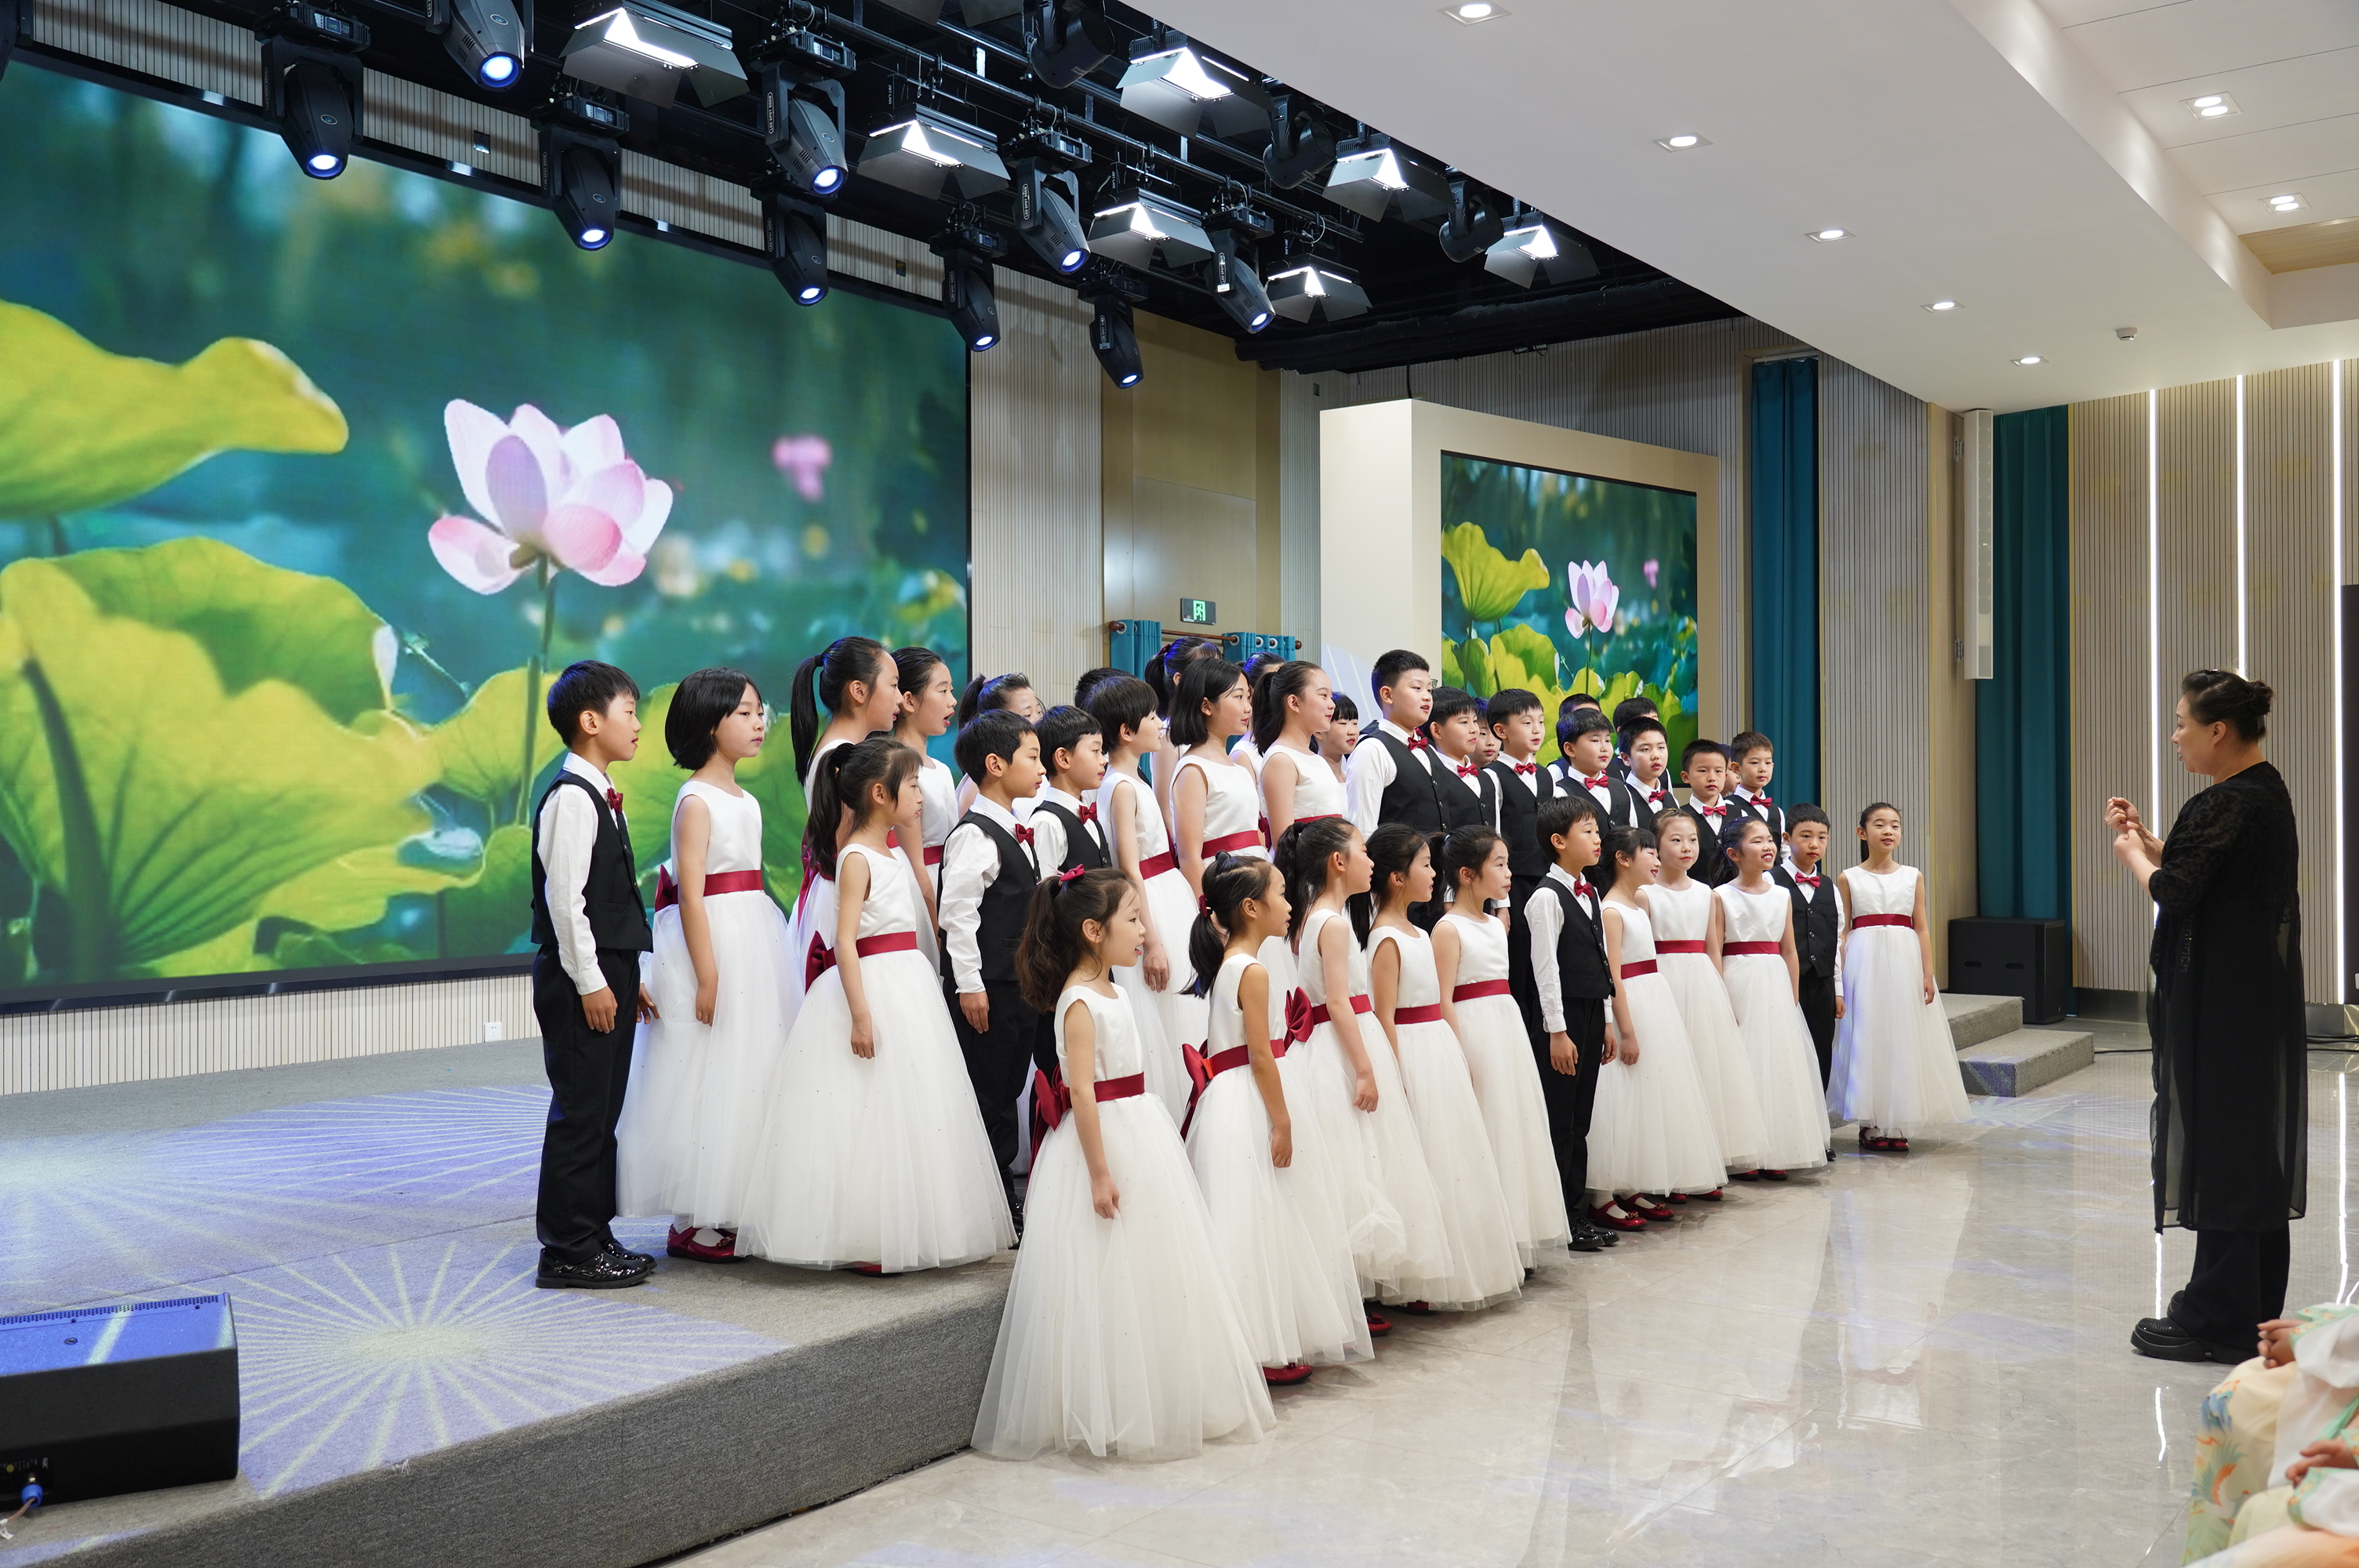 7 合唱節目《小池》中國兒童藝術團國際合唱團